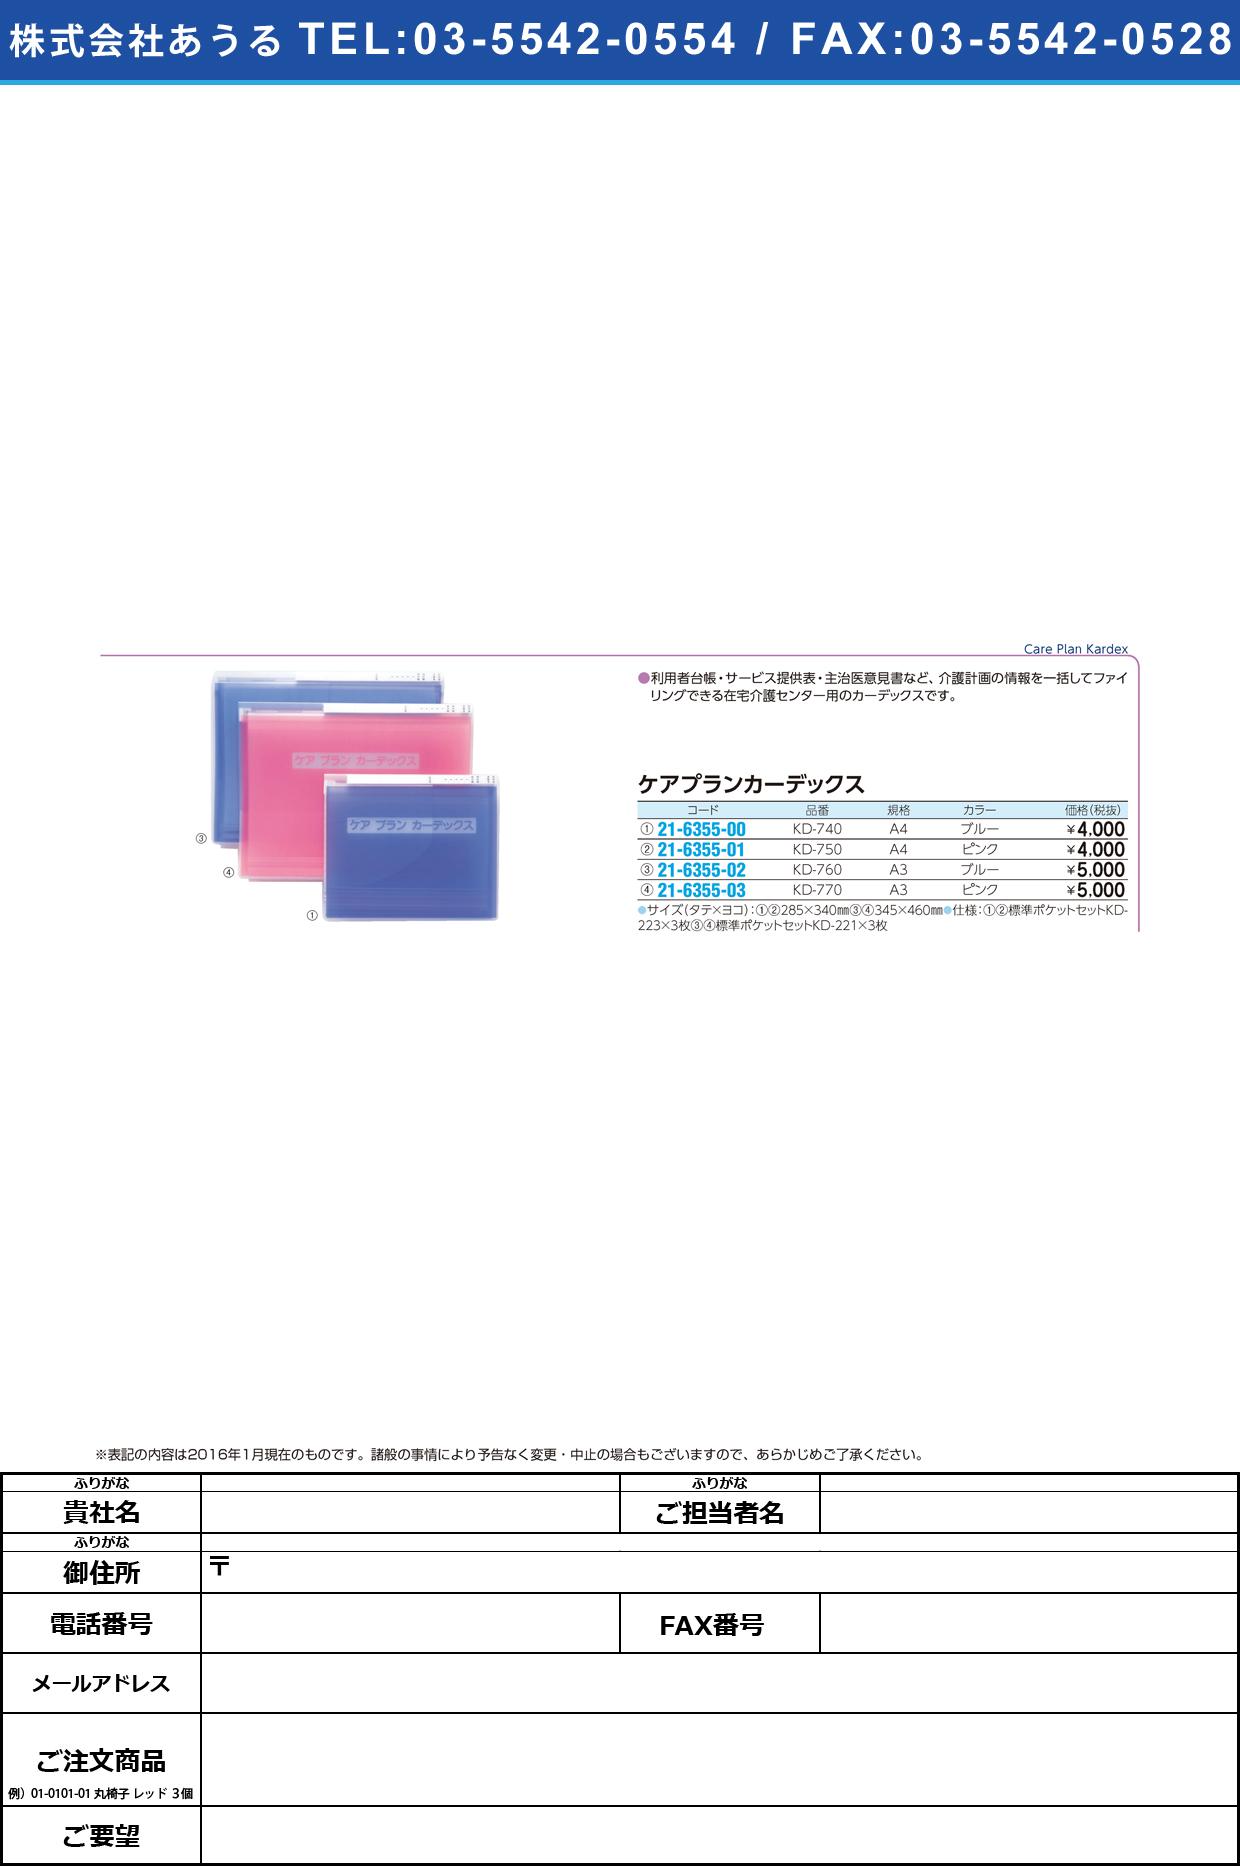 ケアプランカーデックス     ｹｱﾌﾟﾗﾝｶｰﾃﾞｯｸｽ KD-760(A3)ﾌﾞﾙｰ【1冊単位】(21-6355-02)